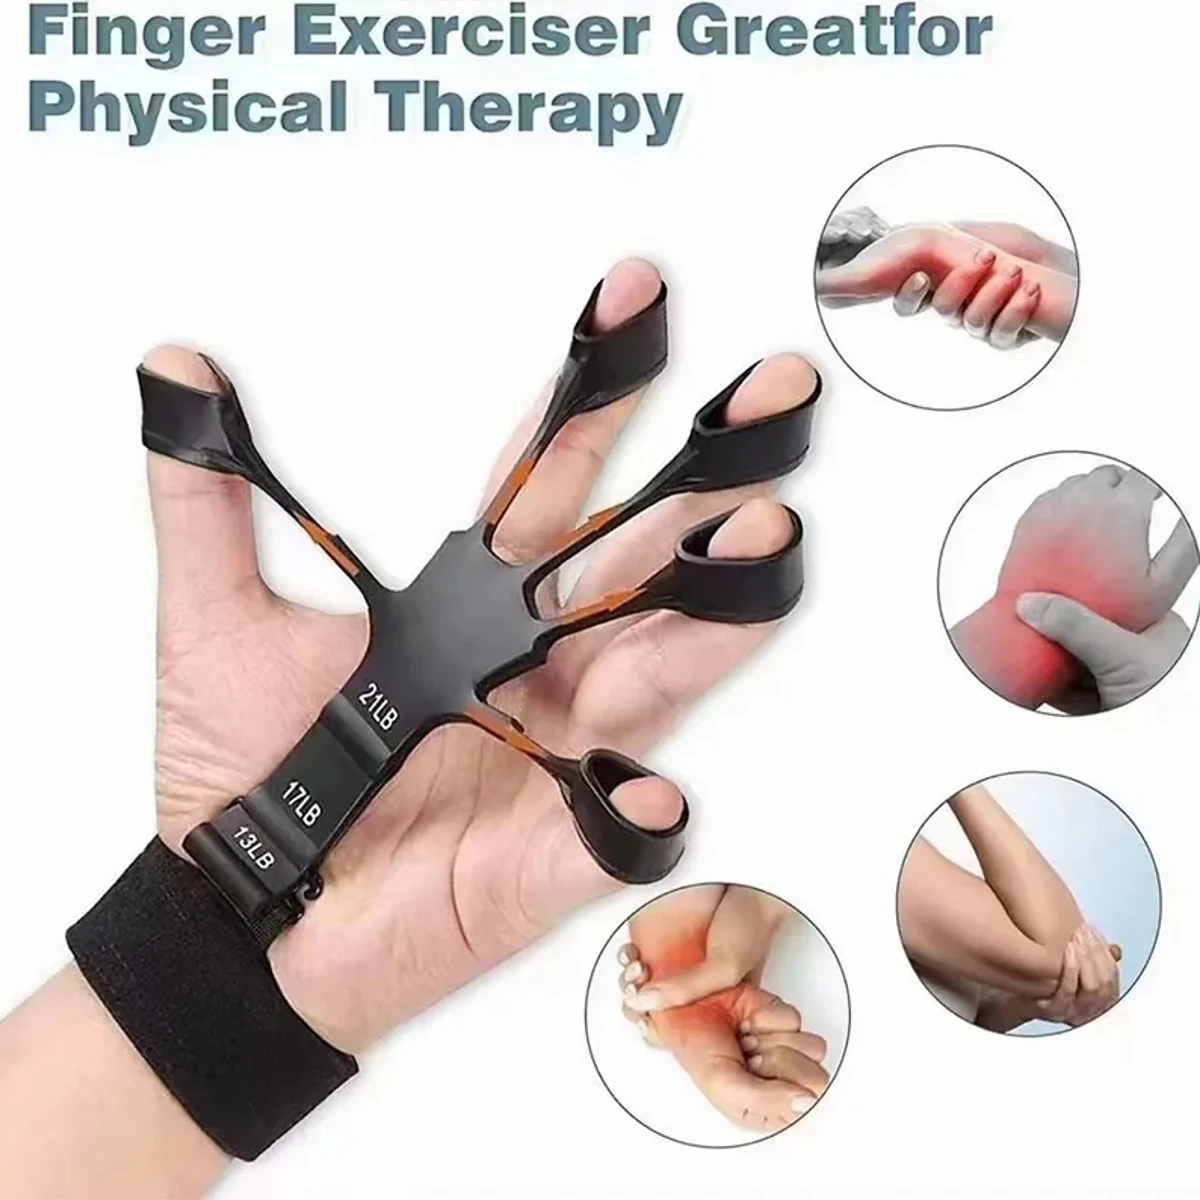 Finger Exerciser Grip Strengthener Hand Gripper Exerciser for Forearm and Finger Strength